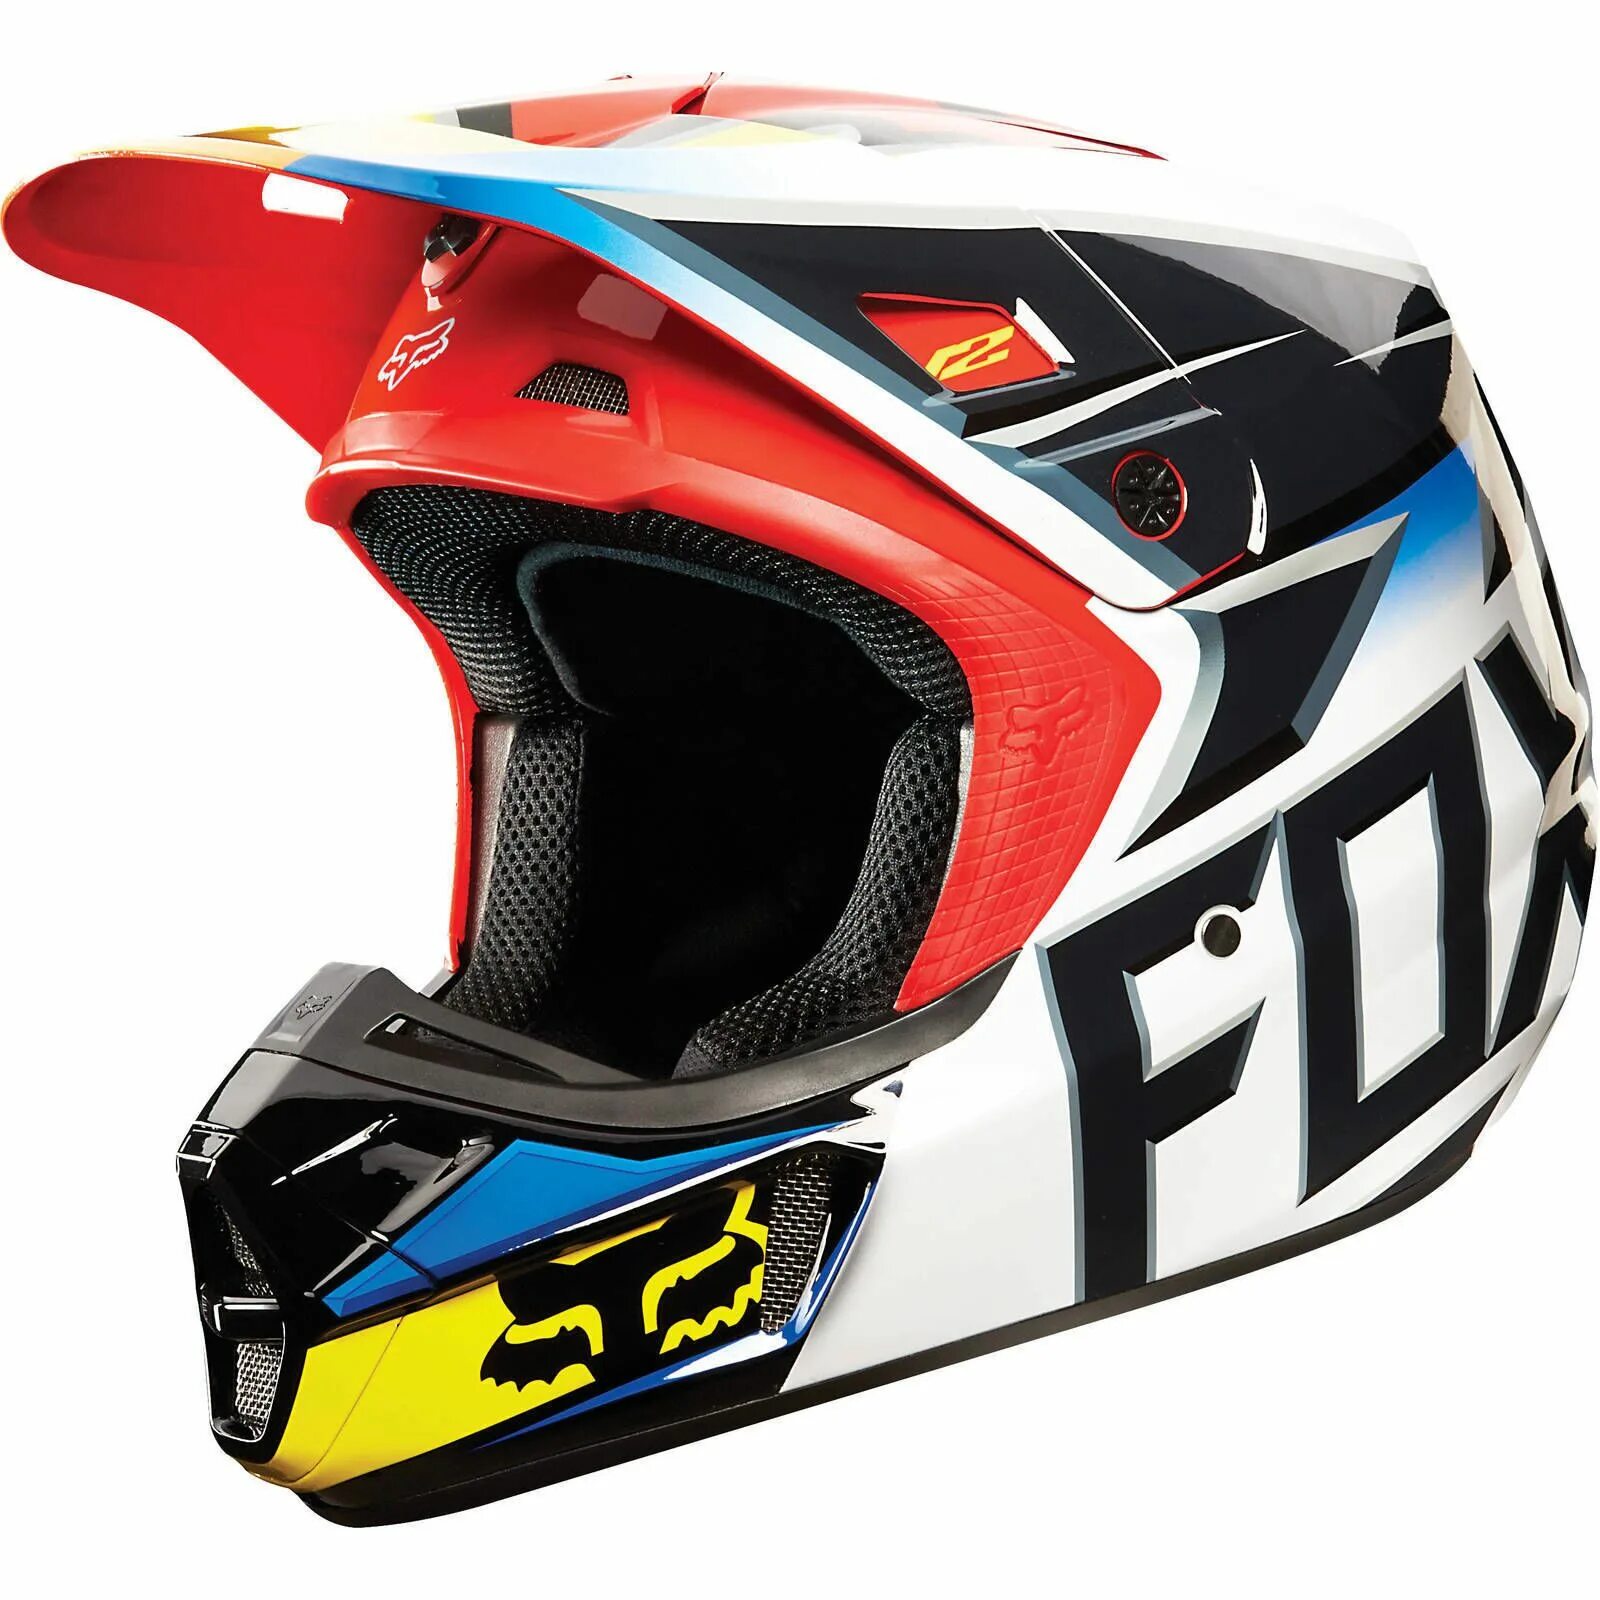 Шлем Fox v9. Шлем Fox v2 шлем. Fox Racing шлем кроссовый. Шлем для мотокросса Фокс. Кроссовые fox